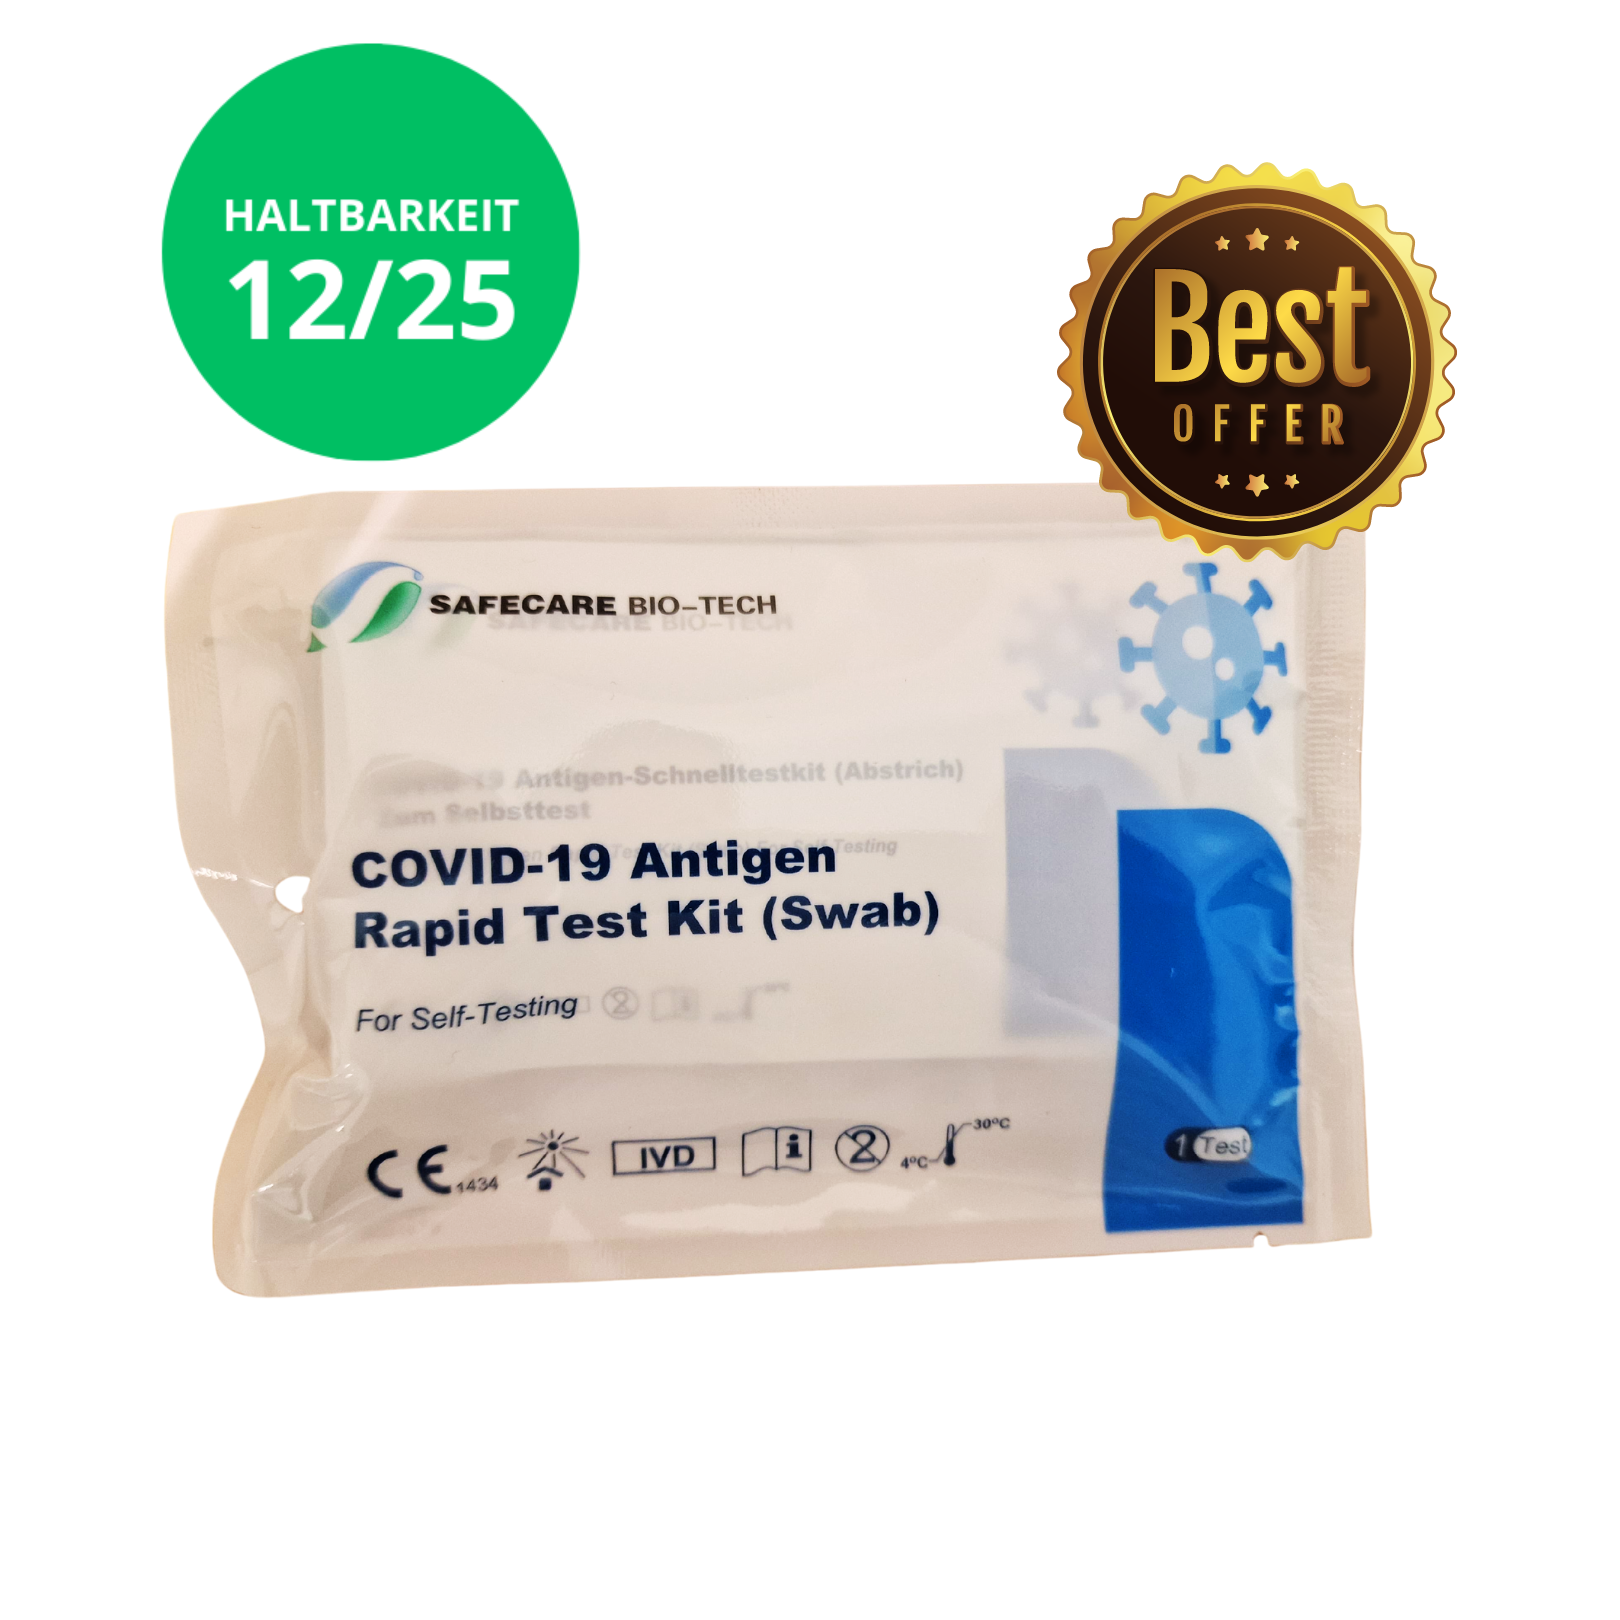 Ab 0,79€/Stück! Safecare Laien Nasal Covid-19 Corona Test - CE 1434 - MHD 12/25 - Alle neuen Varianten